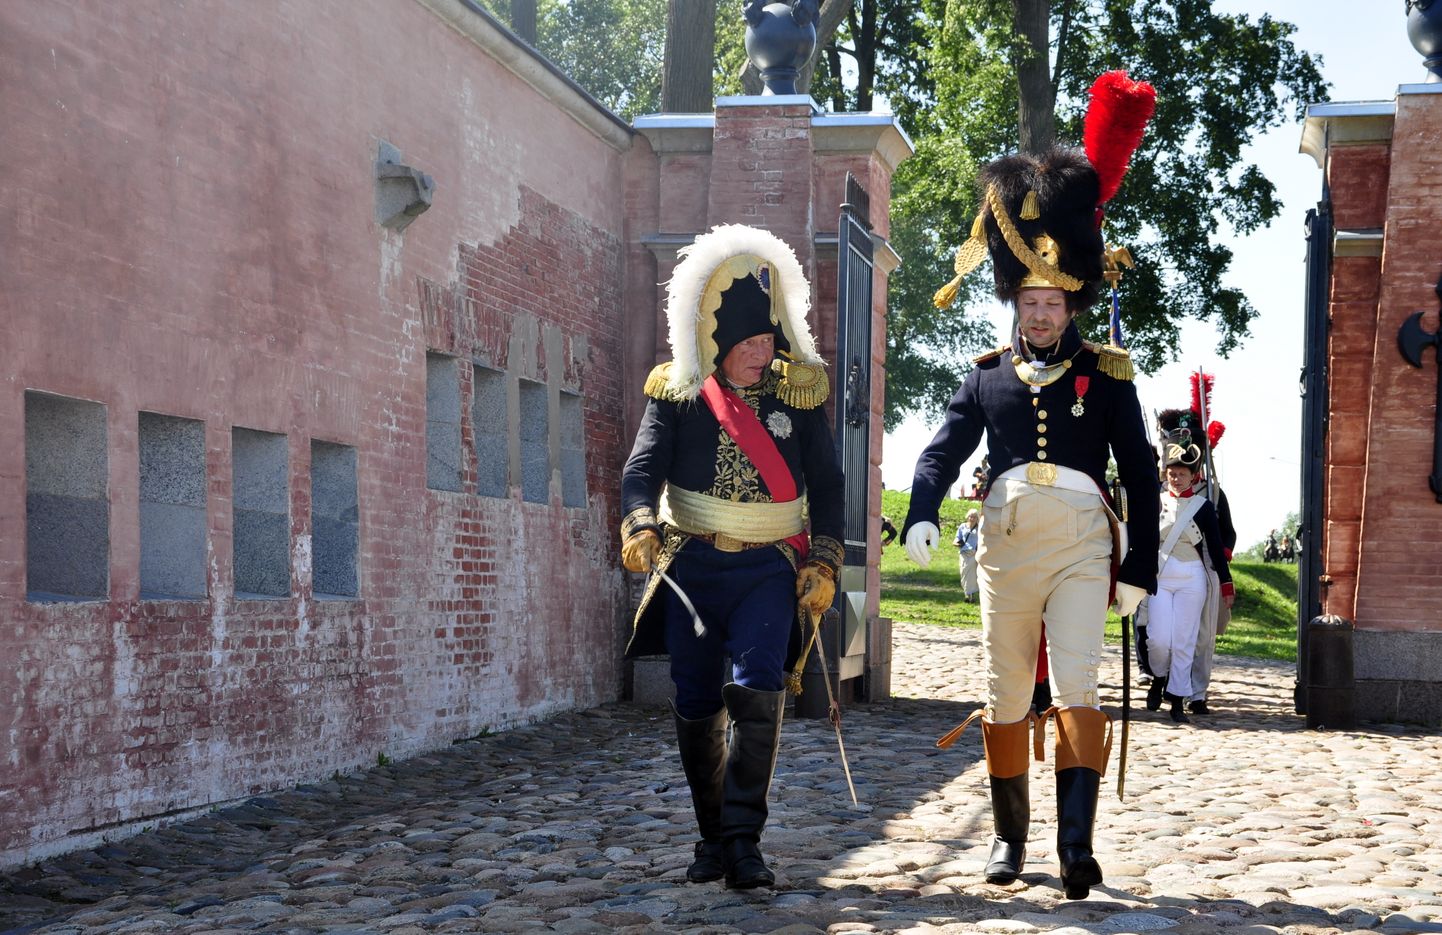 Daugavpils cietoksnī notiek starptautiskais kara vēstures rekonstrukcijas klubu festivāls "Dinaburg – 1812", kas veltīts 1812. gada Napoleona armijas uzbrukumam Dinaburgas cietoksnim.